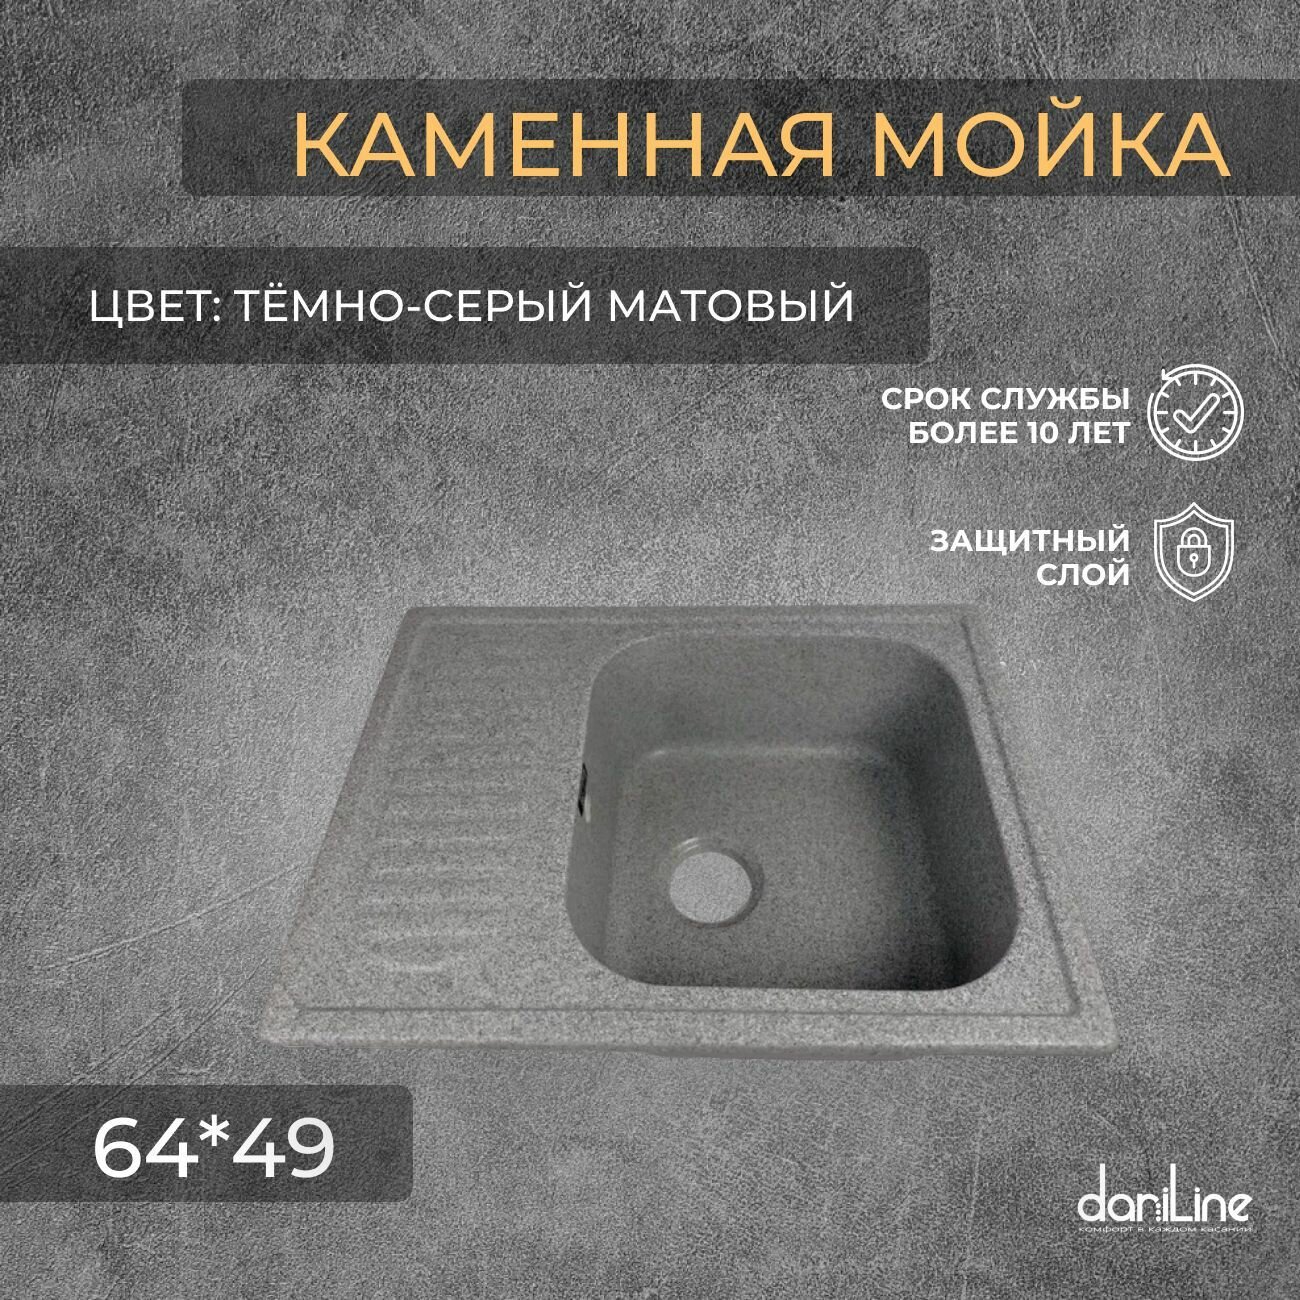 Мойка из камня для кухни, цвет тёмно-серый матовый - фотография № 1